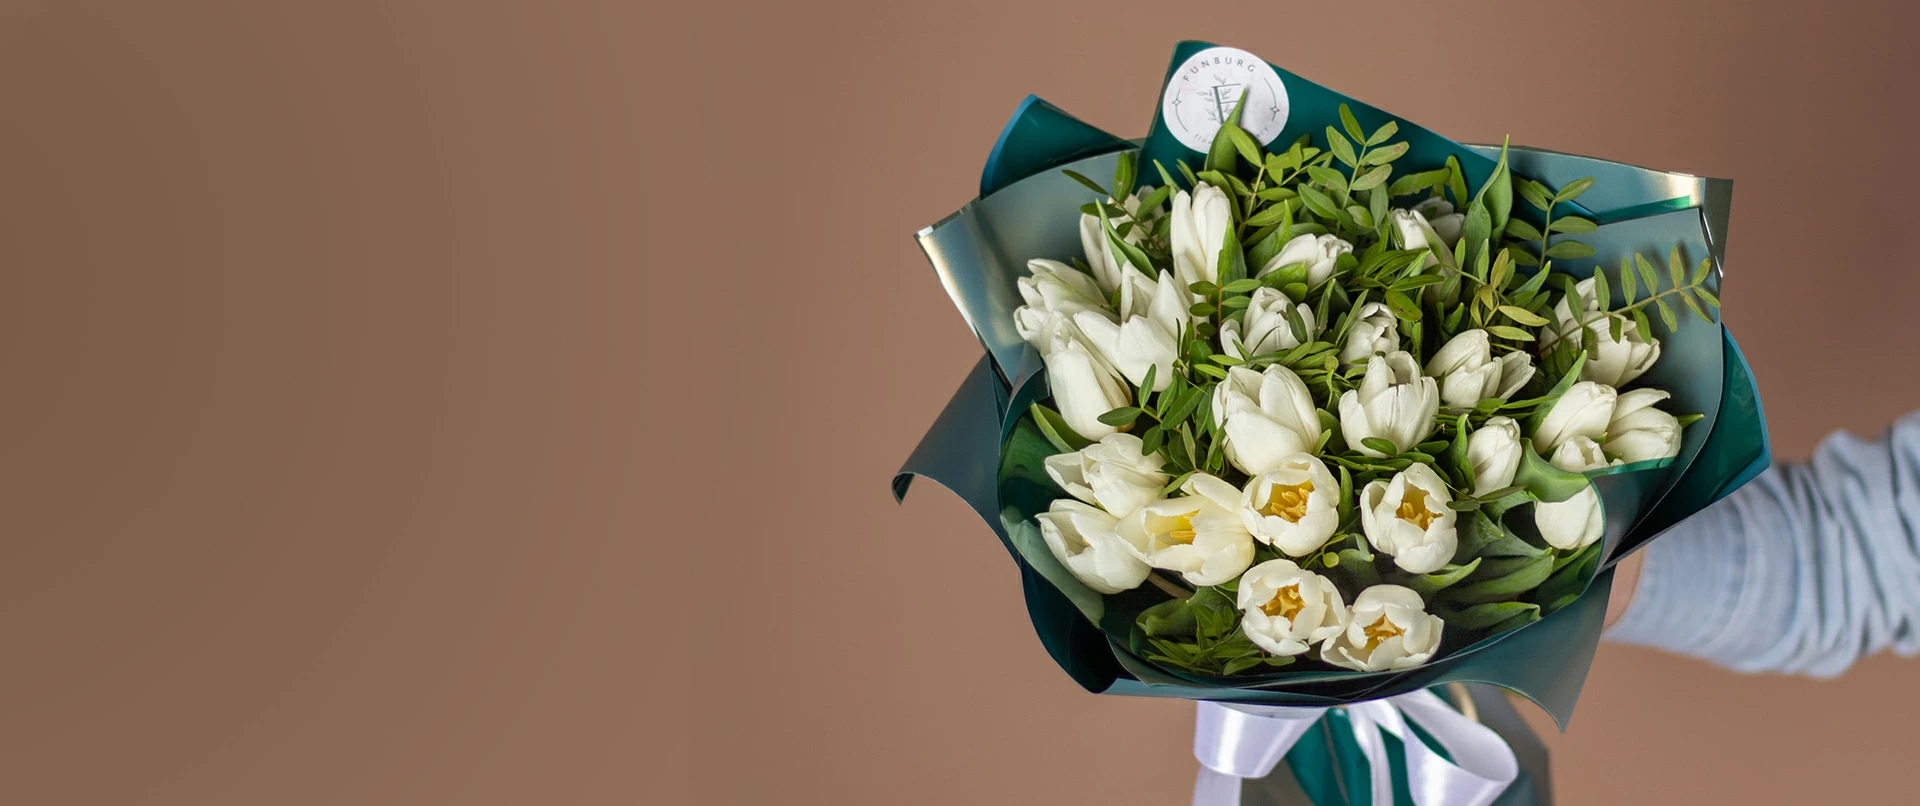 Доставка цветов в Екатеринбурге - заказать на дом